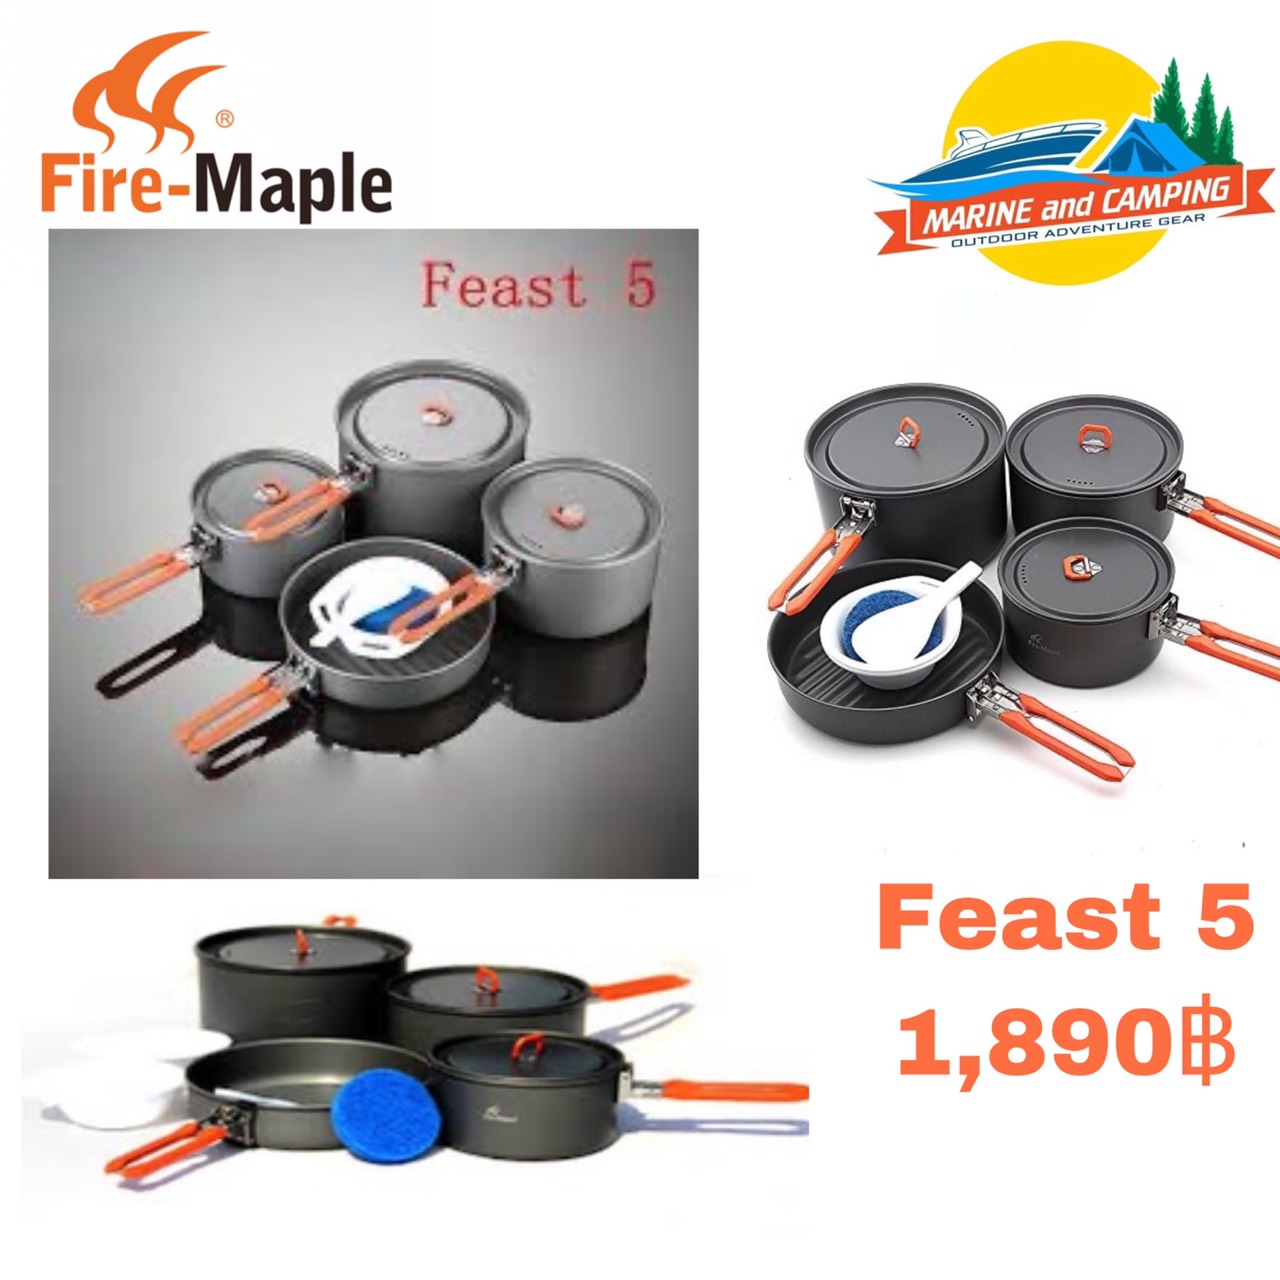 ชุดหม้อ Fire-maple feast 5